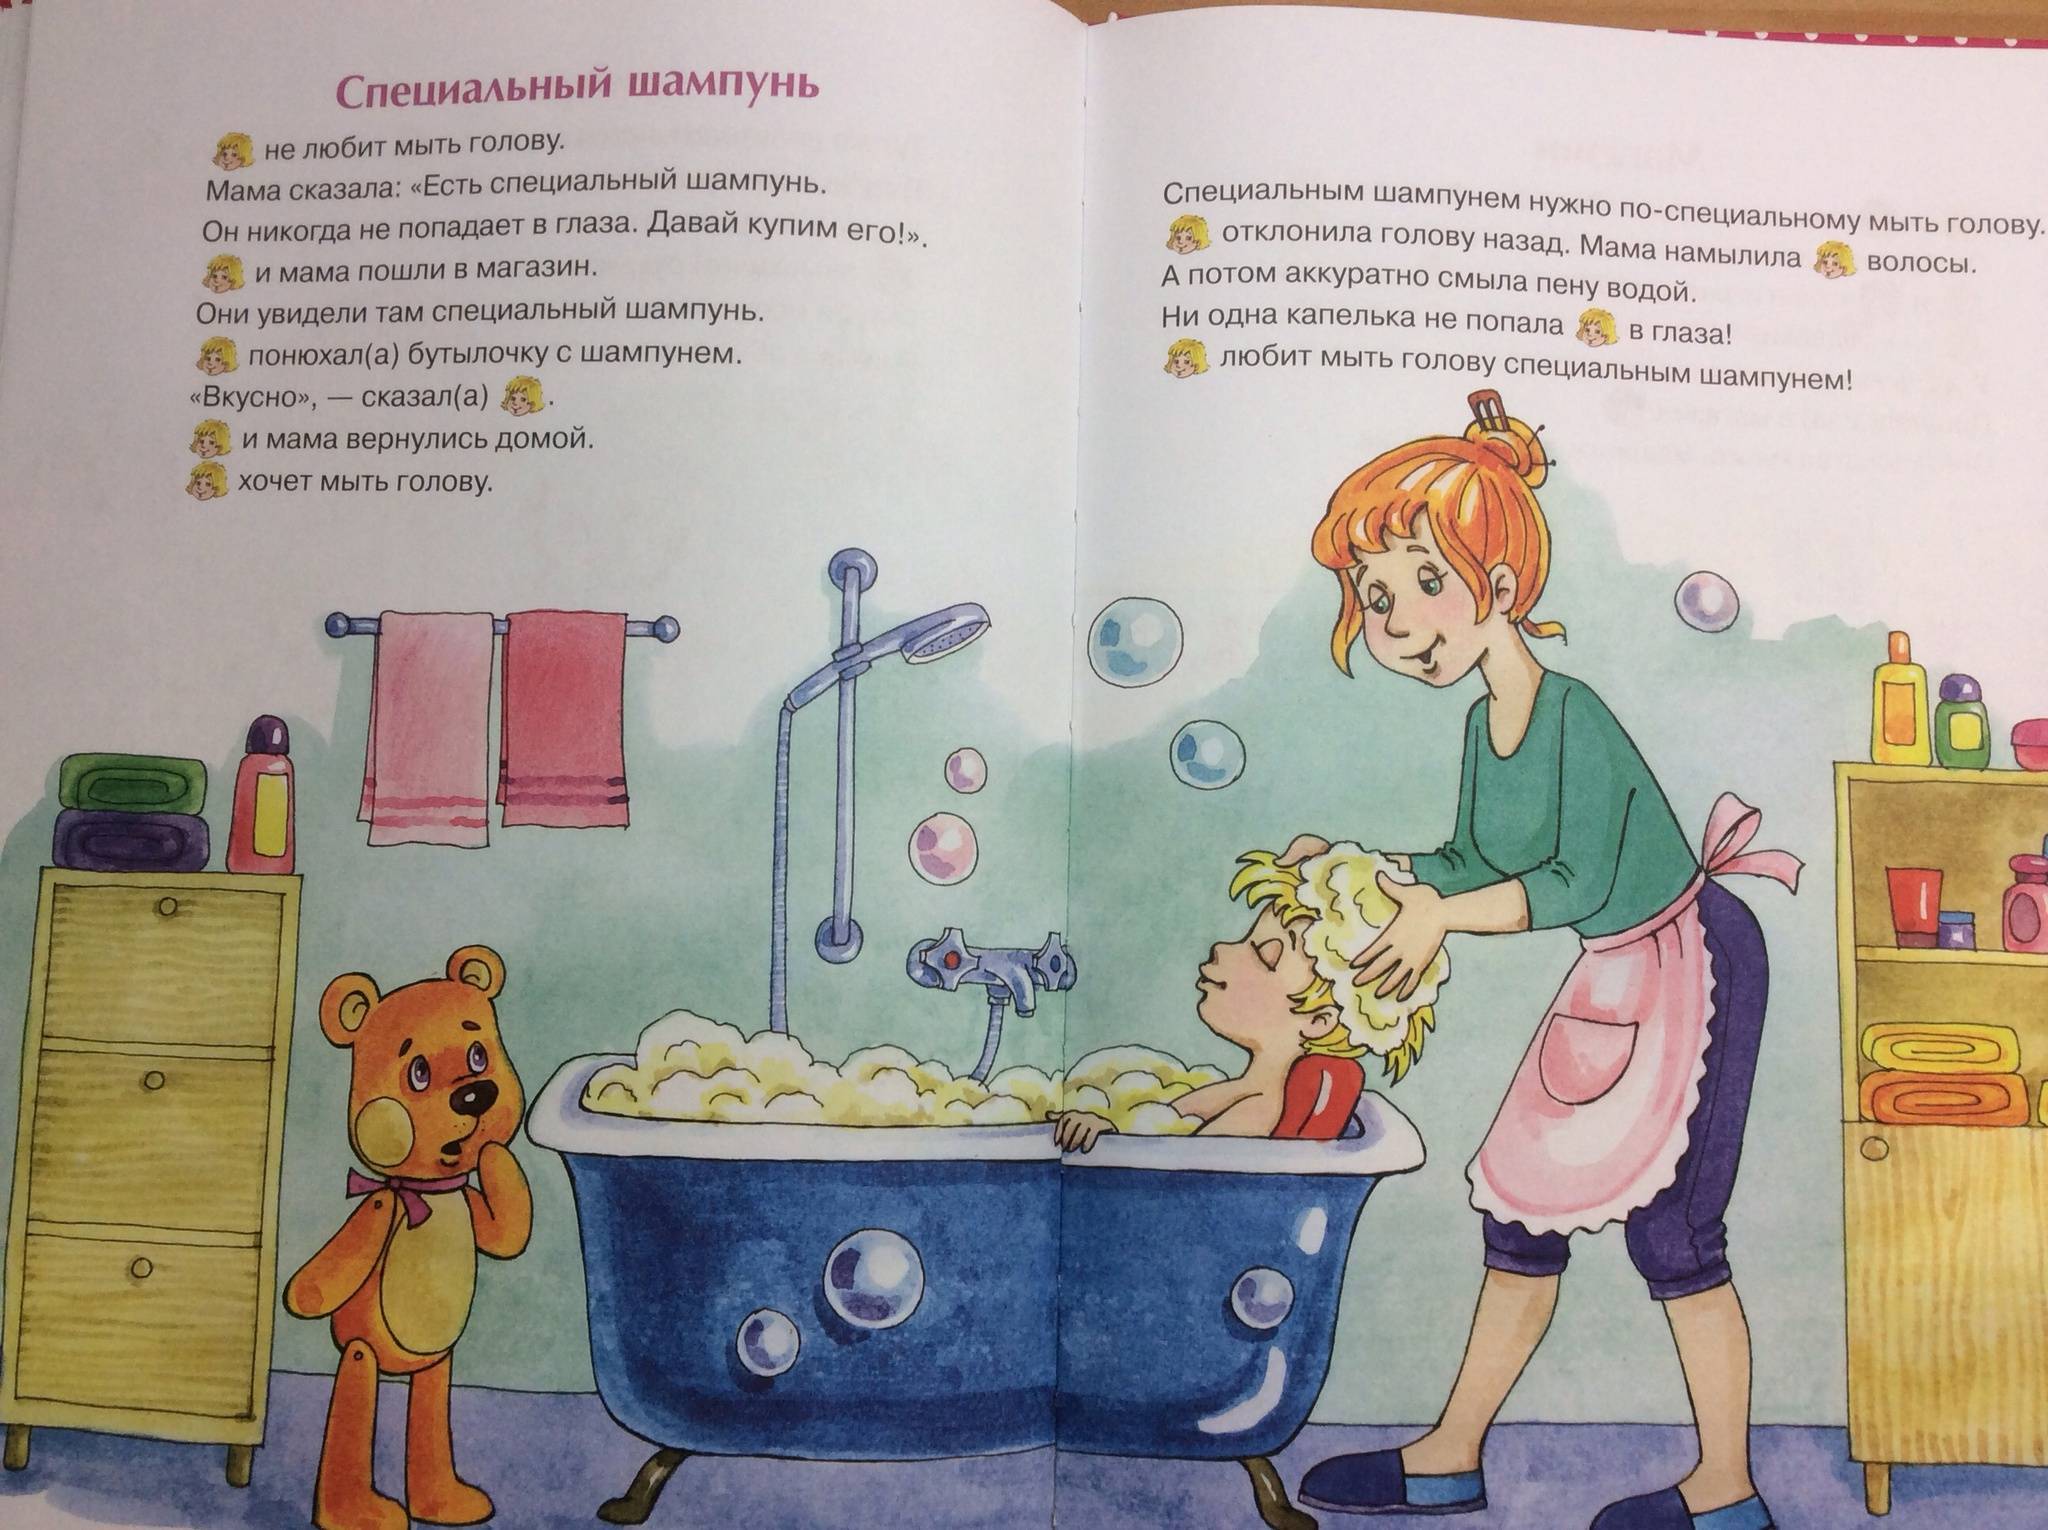 Советы молодой маме: как мыть голову новорожденному?